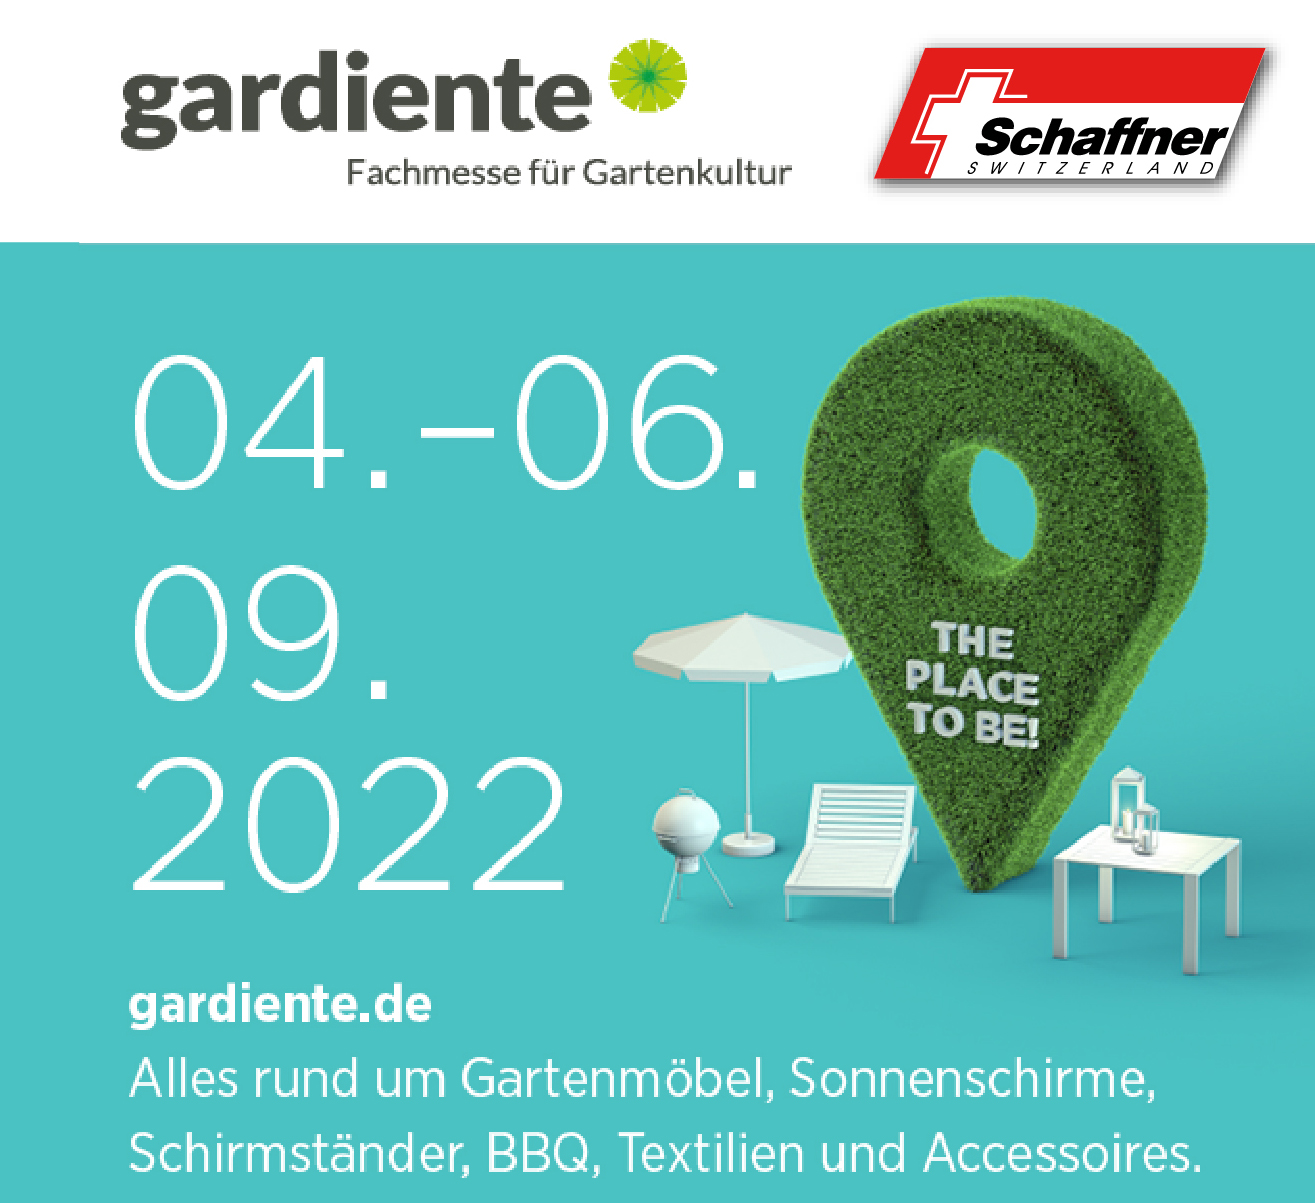 GARDIENTE Fachmesse für Gartenkultur in Hofheim (D)